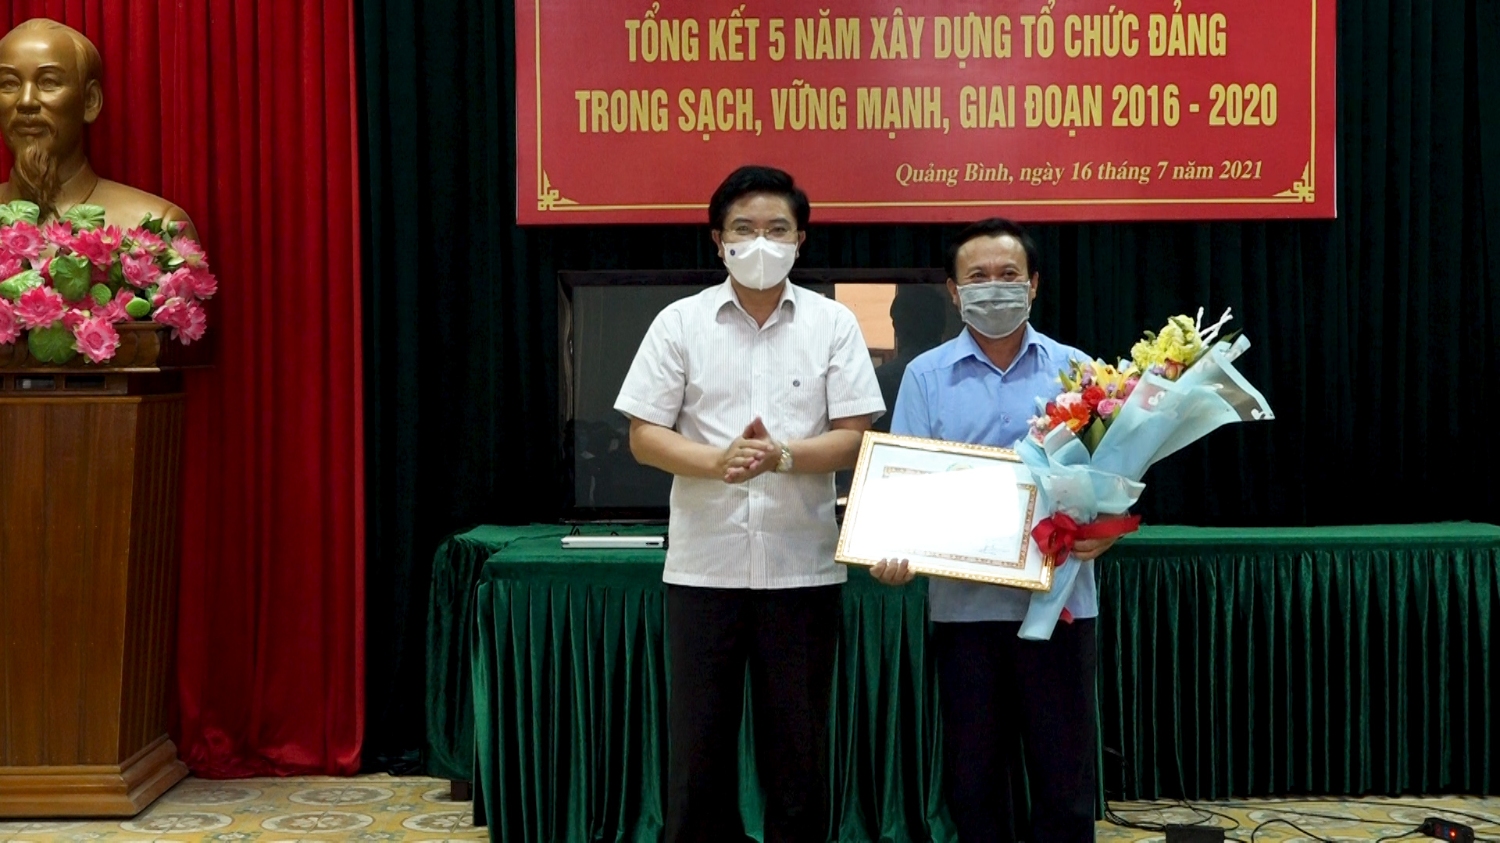 Đảng bộ thị xã Ba Đồn được Ban Thường vụ Tỉnh ủy tặng bằng khen có thành tích xuất sắc trong công tác xây dựng TCCSĐ trong sạch, vững mạnh 5 năm 2016 2020